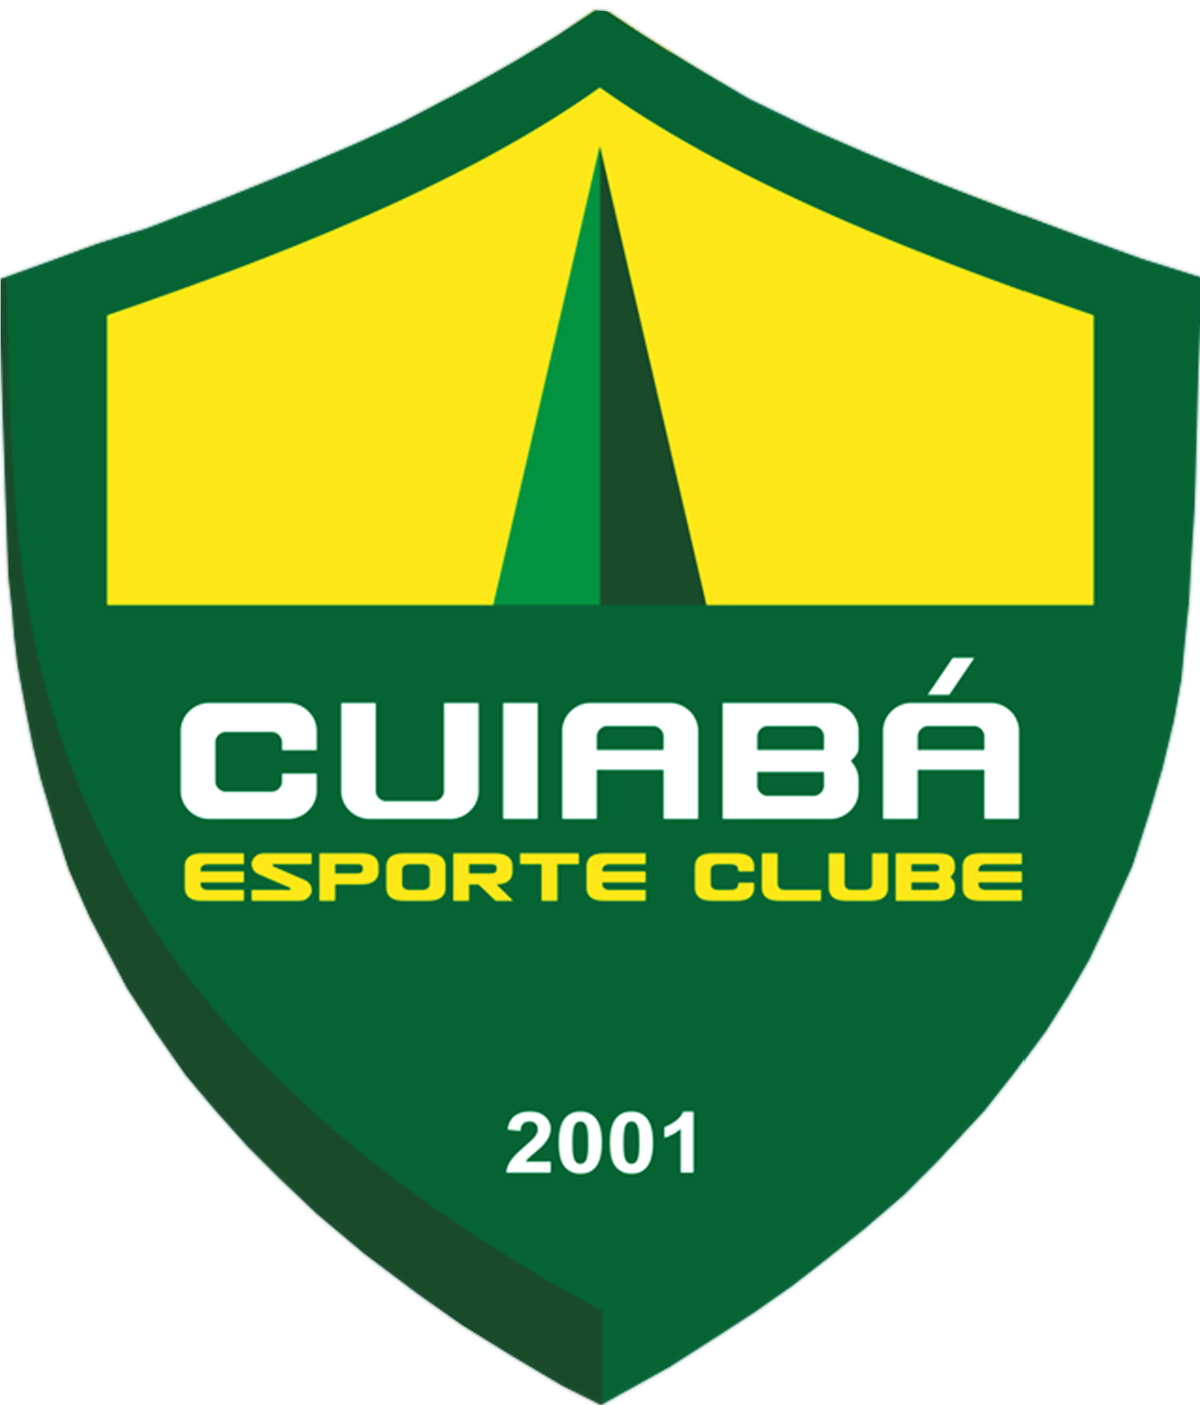 Cuiabá vs Fluminense Prediction: Cuiabá can steal points from Fluminense 